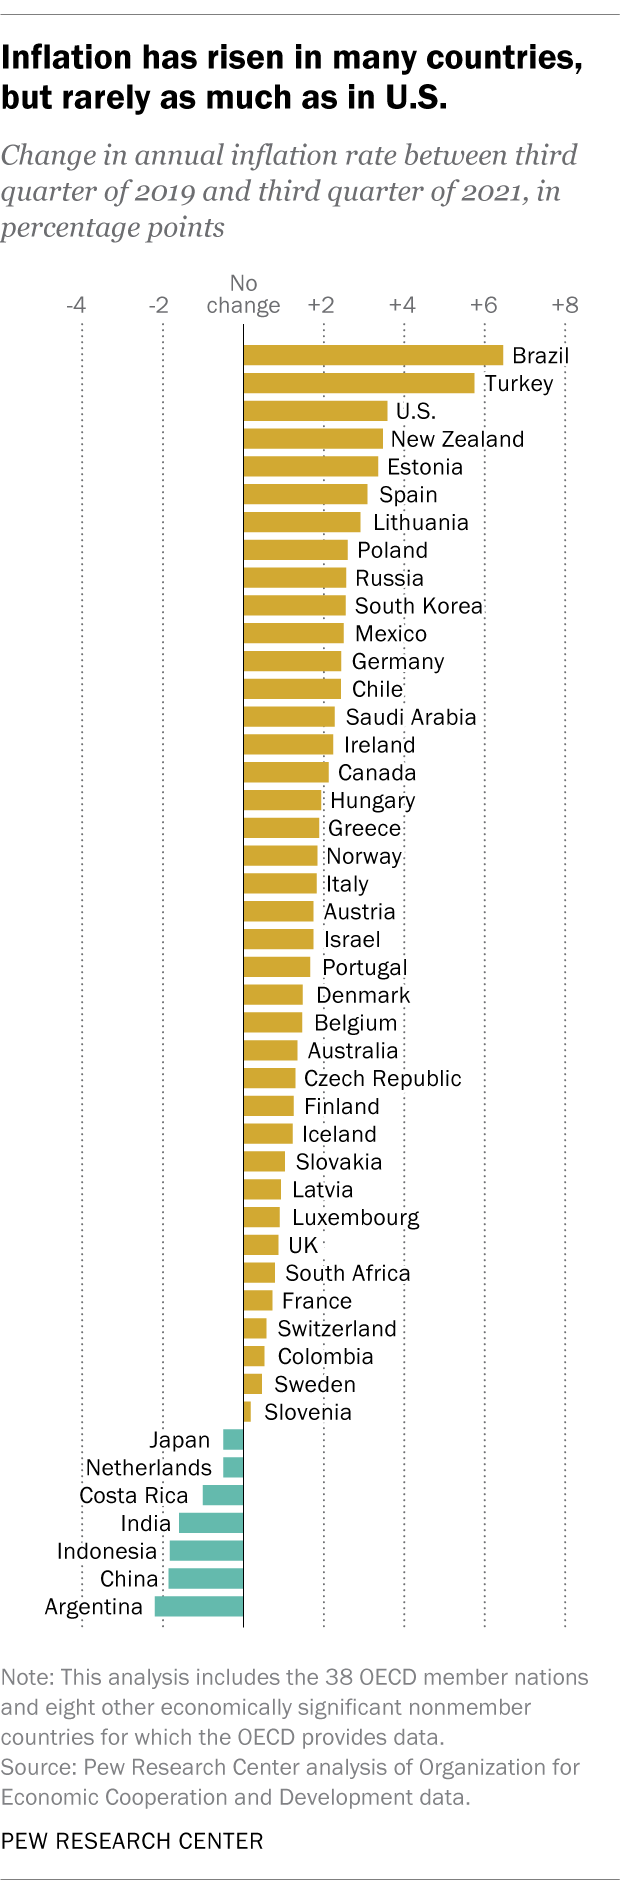 et diagram, der viser, at inflationen er steget i mange lande, men få mere end i USA.